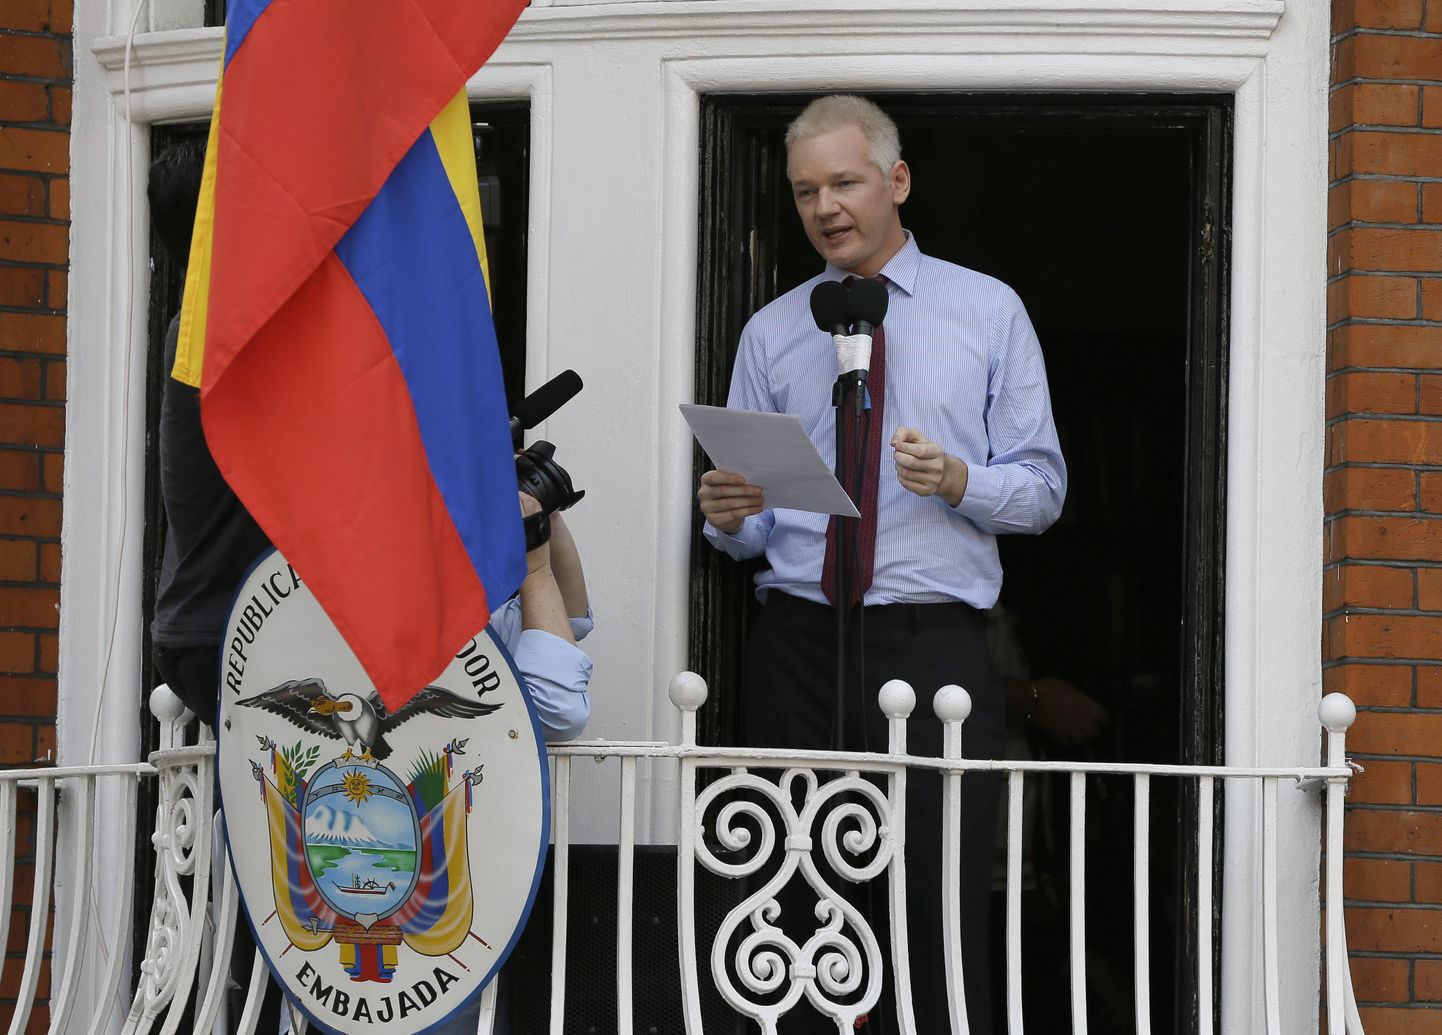 Джулиан Ассанж произнес в воскресенье первую за последние два месяца публичную речь с балкона второго этажа посольства Эквадора в Лондоне.